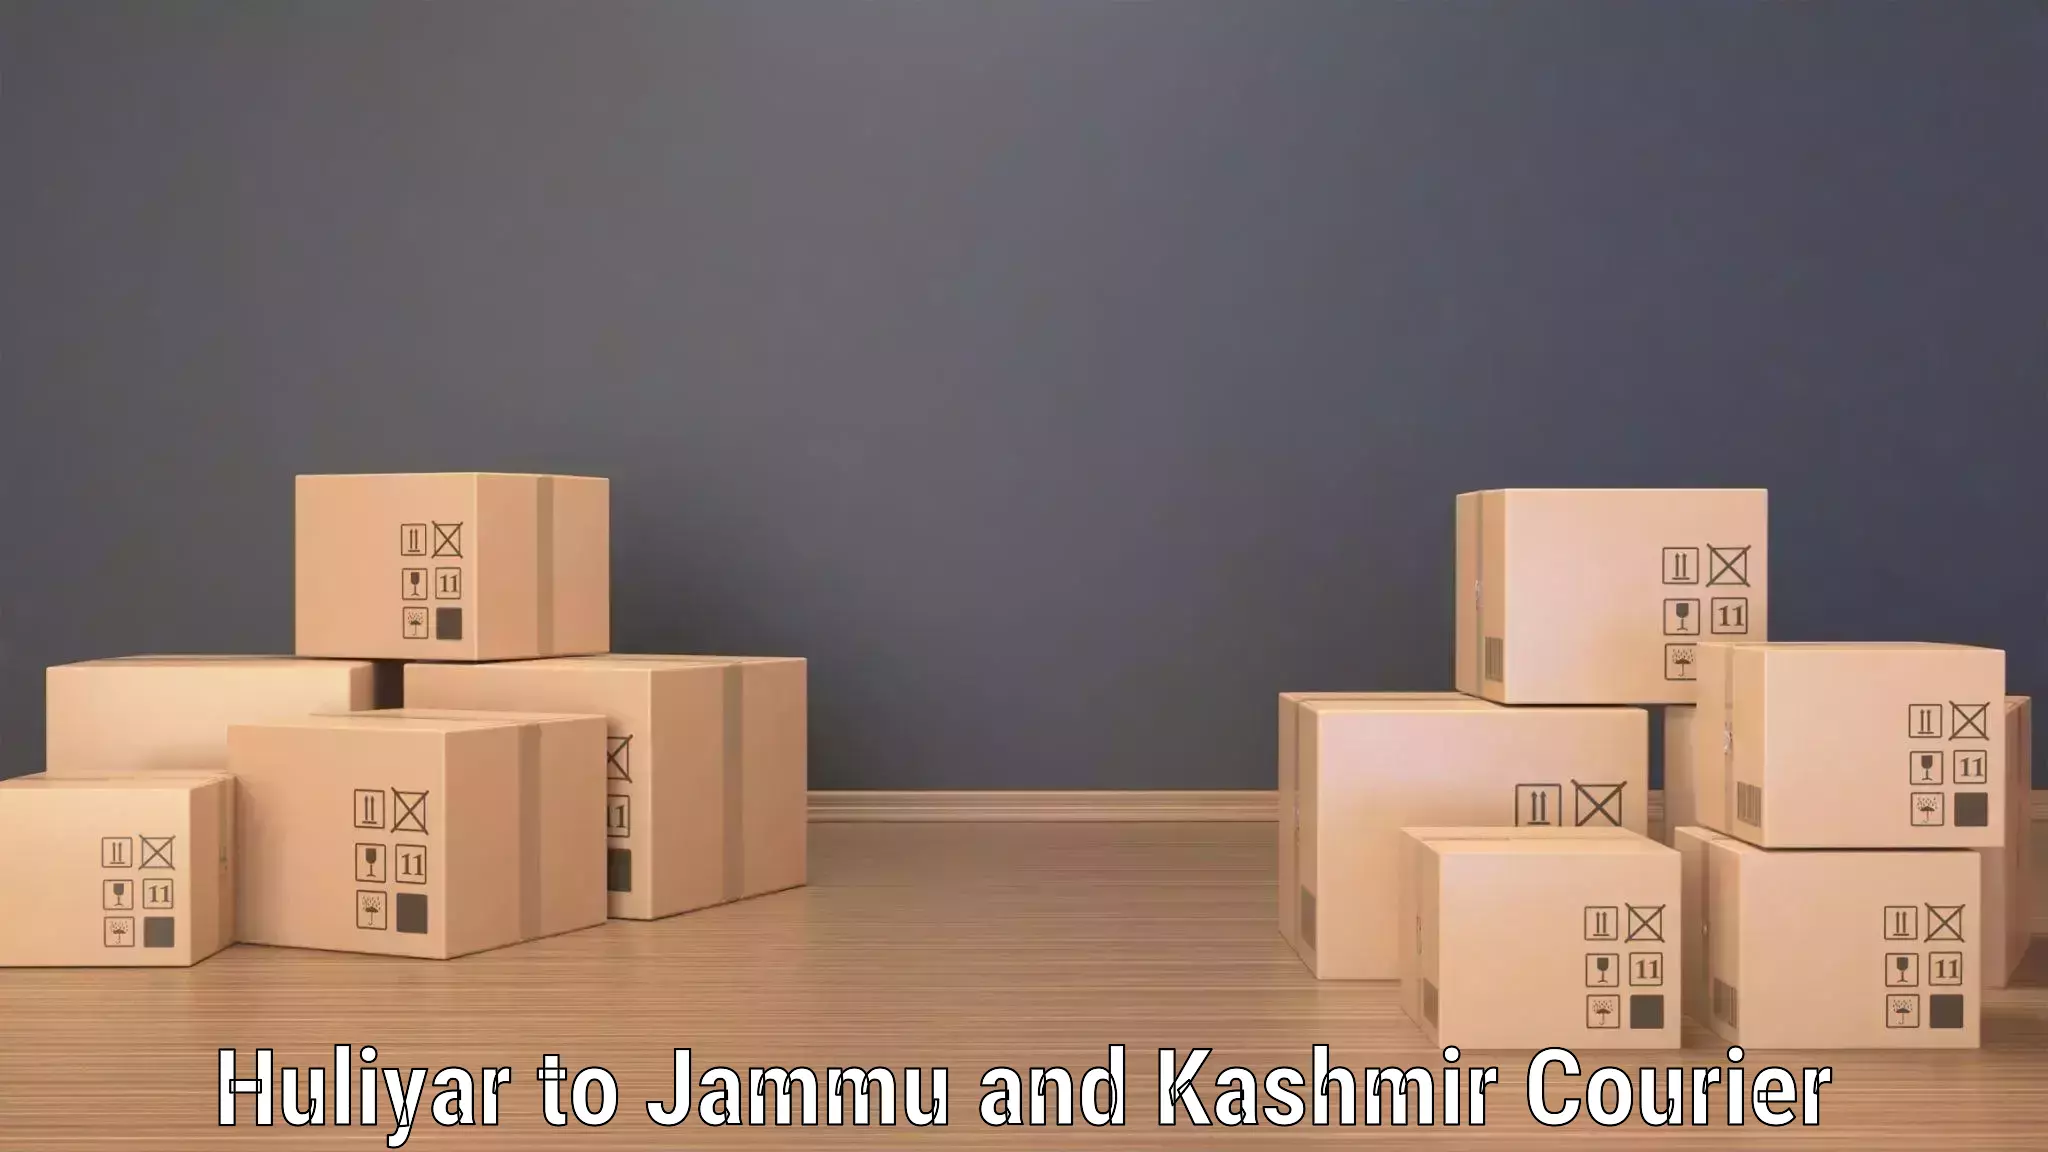 High-capacity shipping options Huliyar to Jakh